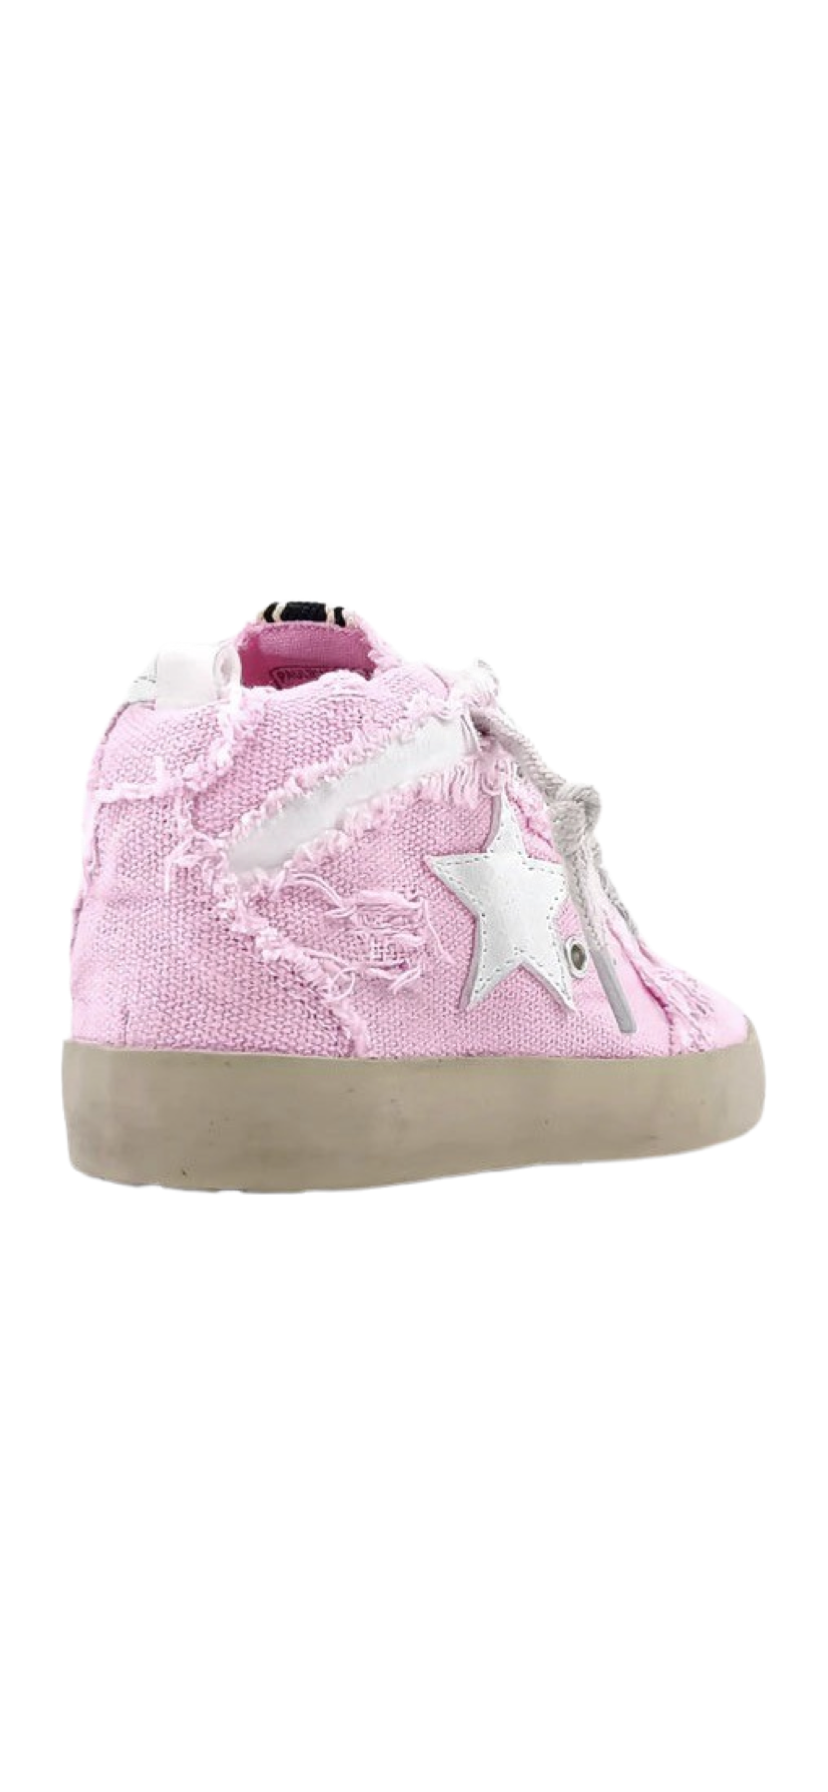 Girls- Shu Shop Paulina Sneakers Toddlers